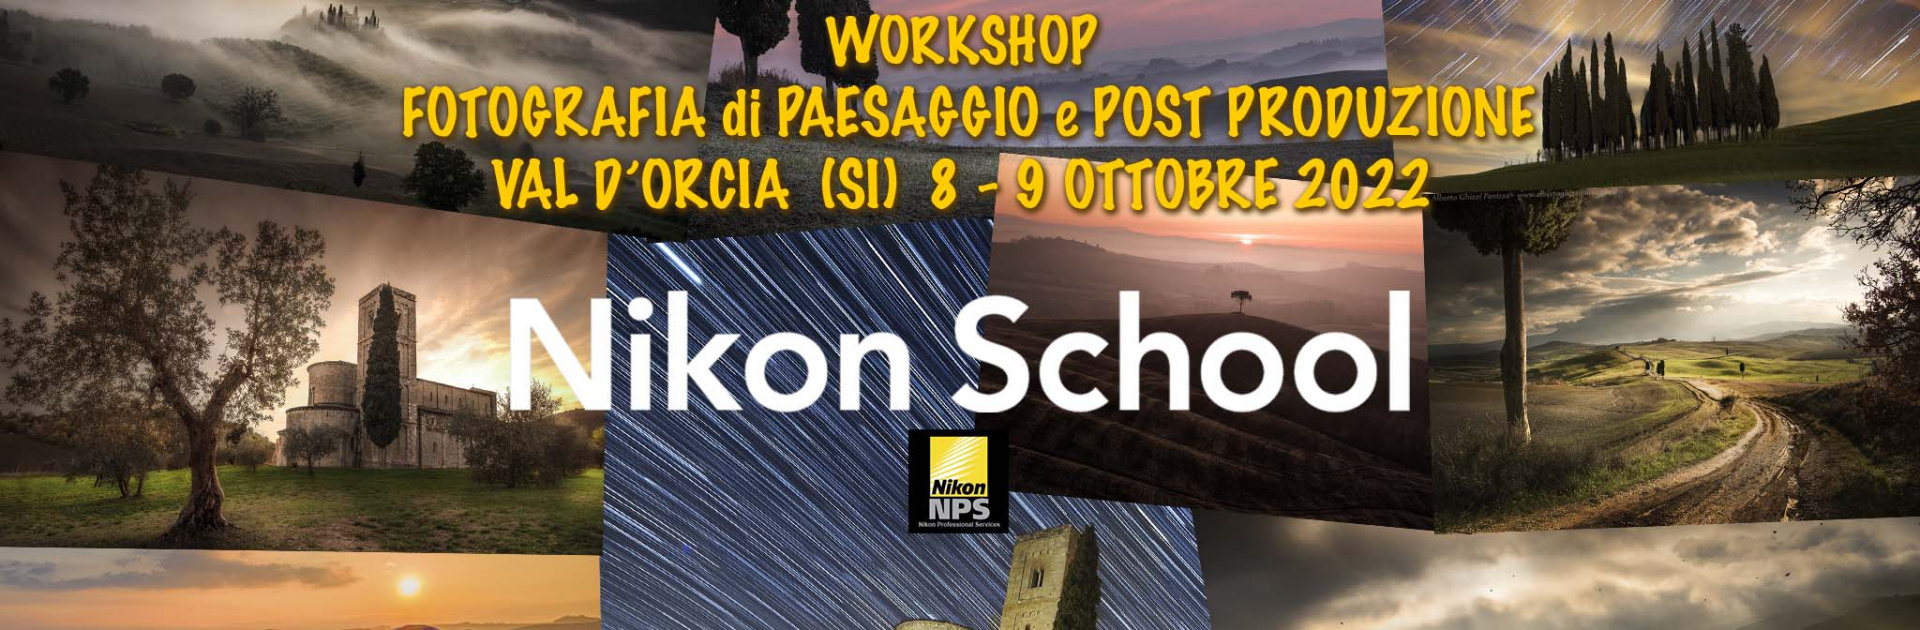 Alberto Ghizzi Panizza Luca Vescera Workshop   Fotografia Di Paesaggio E Post Produzione  Val D’orcia  (si)  8 - 9 Ottobre 2022